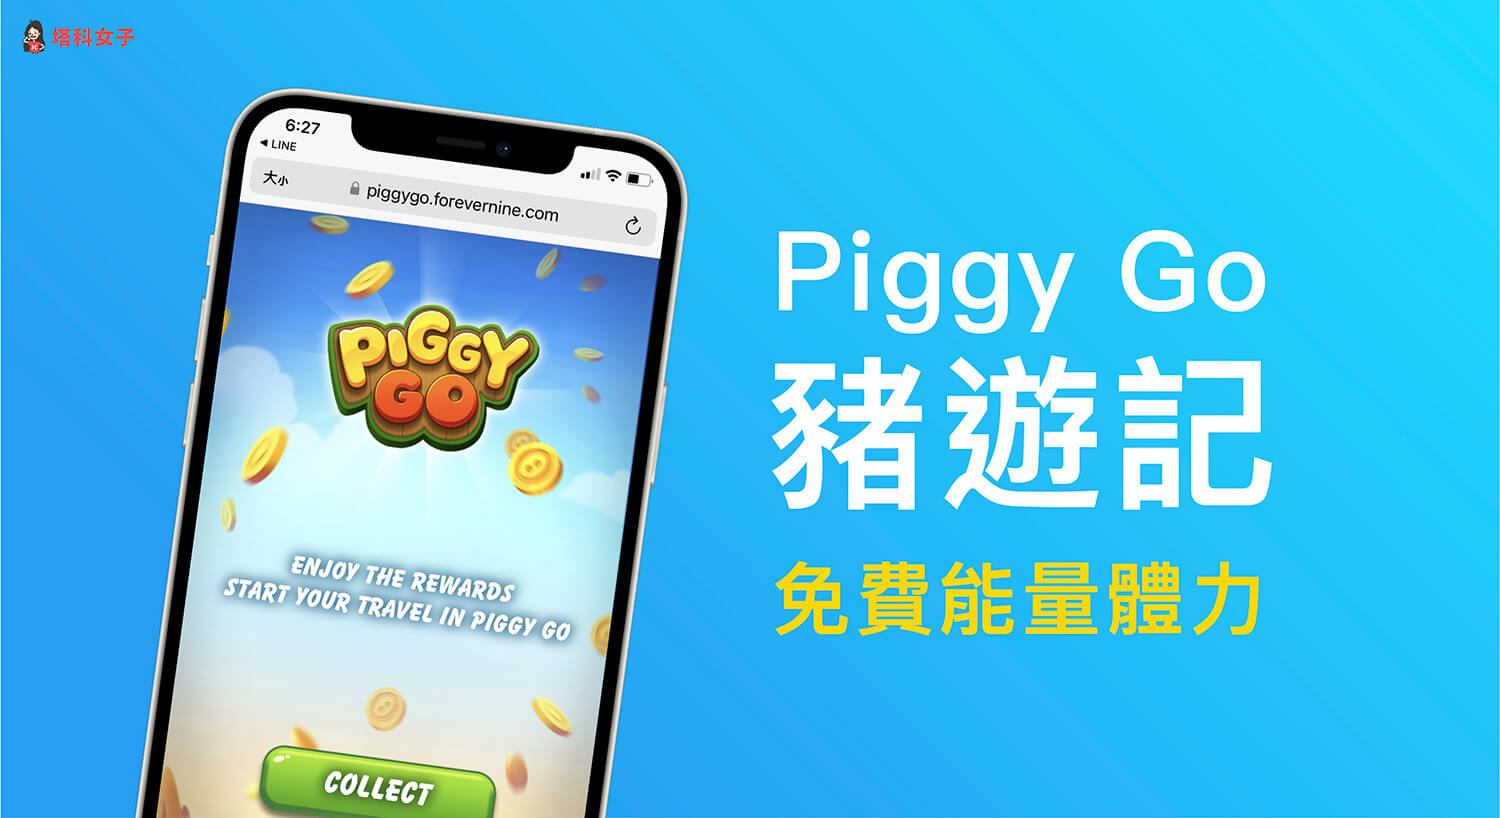 豬遊記免費能量 Piggy Go 兌換碼整理，獲得免費體力與金幣（持續更新）